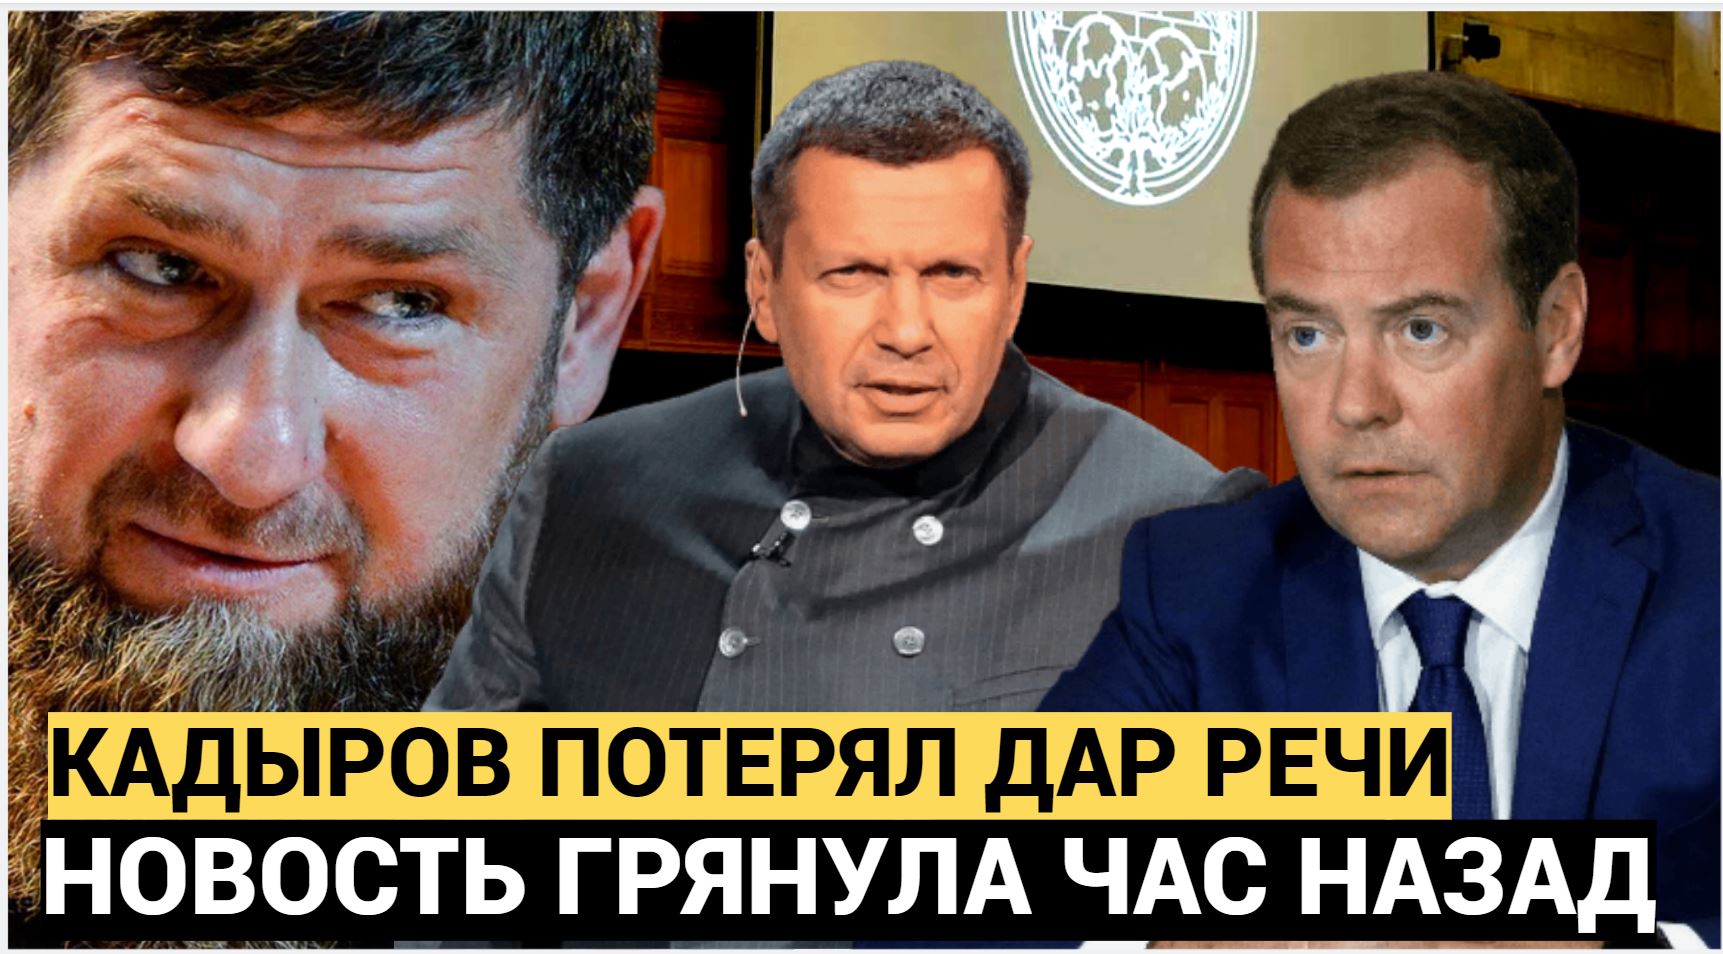 КАДЫРОВ ПОТЕРЯЛ ДАР РЕЧИ!! Запад Требует Арестовать Дмитрия Медведева и Соловьева